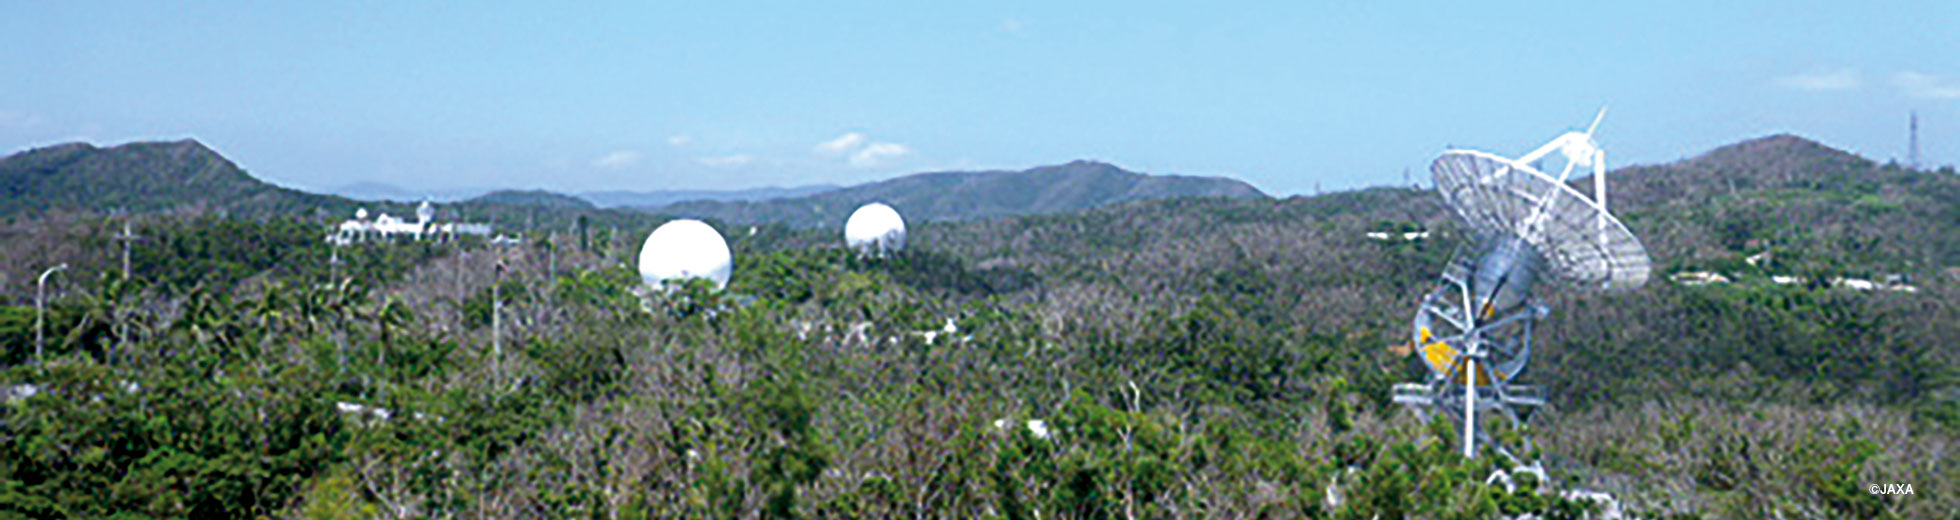 みちびきの追跡管制を行う沖縄宇宙通信所が4月29日に施設を一般公開 ニュース アーカイブ みちびき 準天頂衛星システム Qzss 公式サイト 内閣府